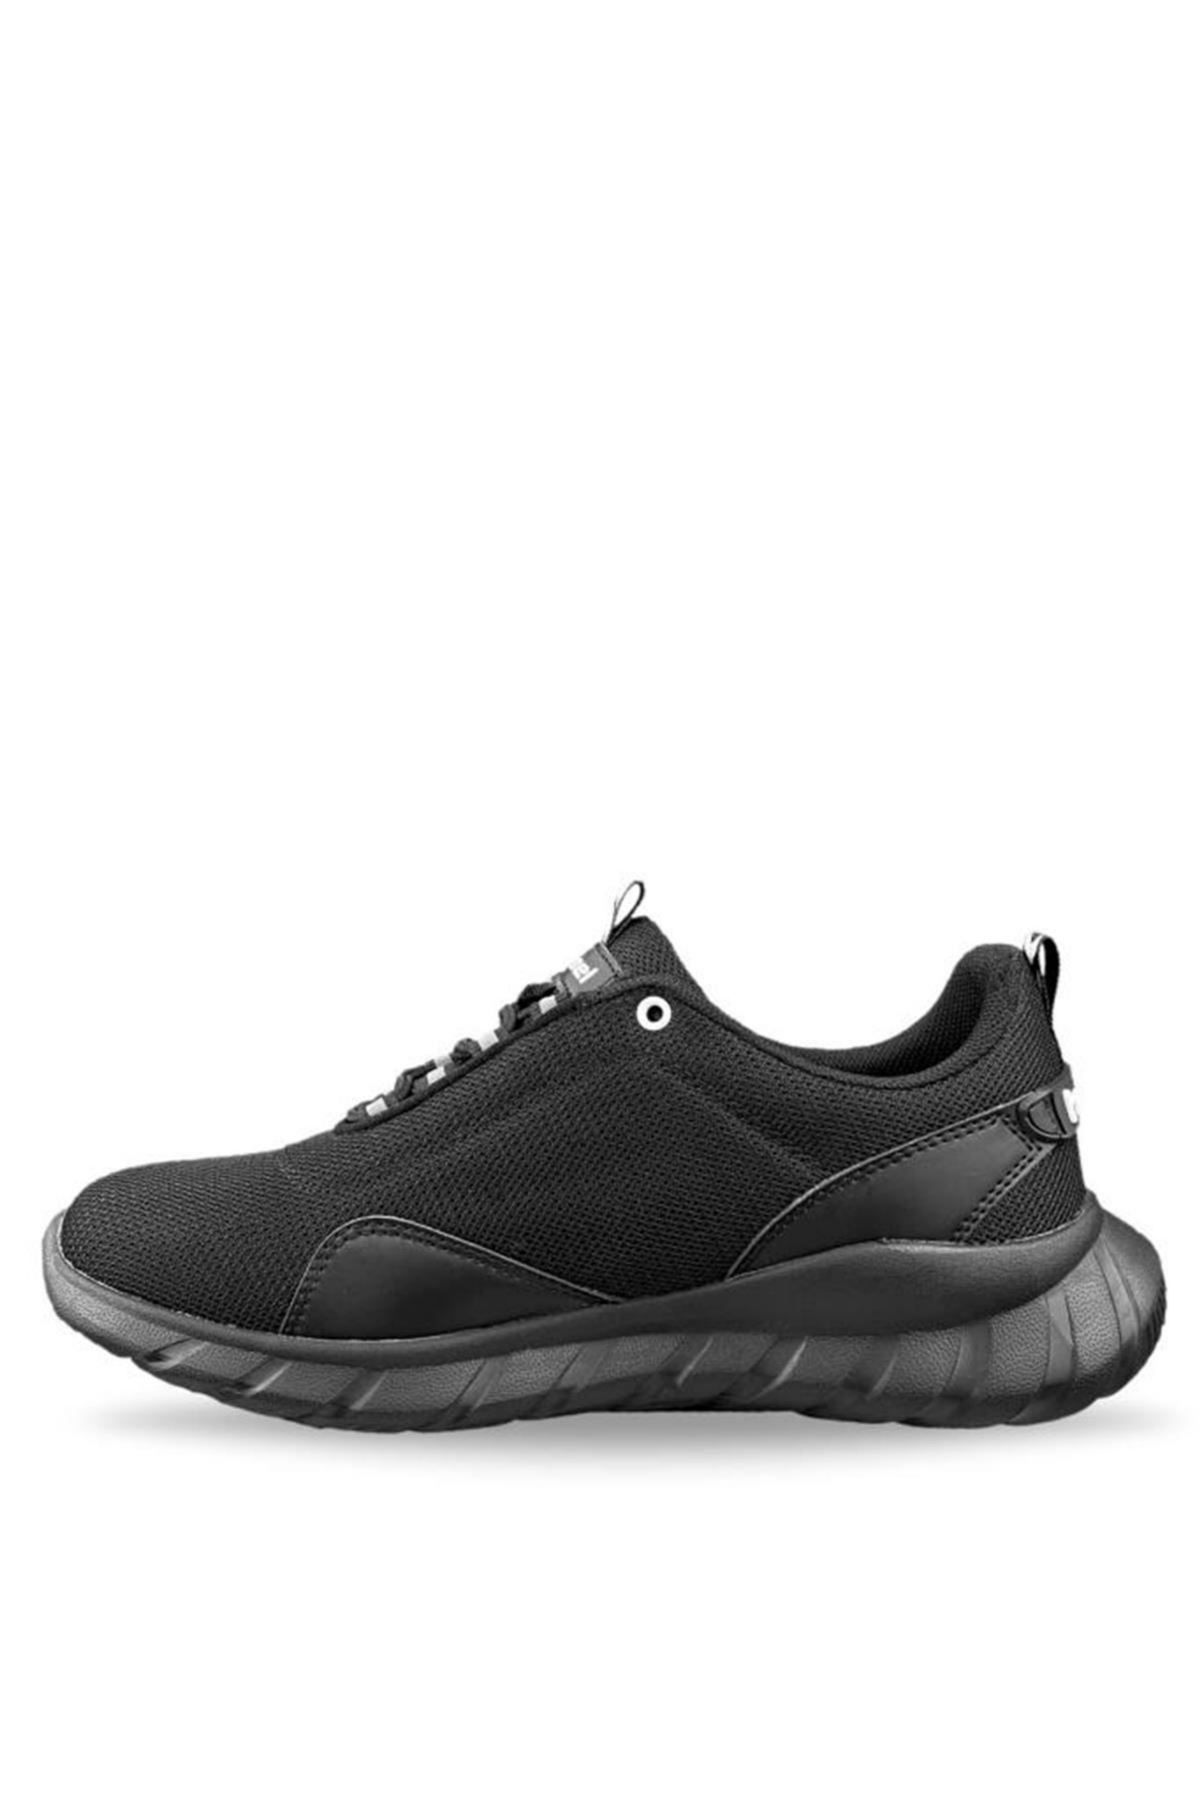 Hummel Gaudi Erkek Siyah Spor Ayakkabı - 900144-2042